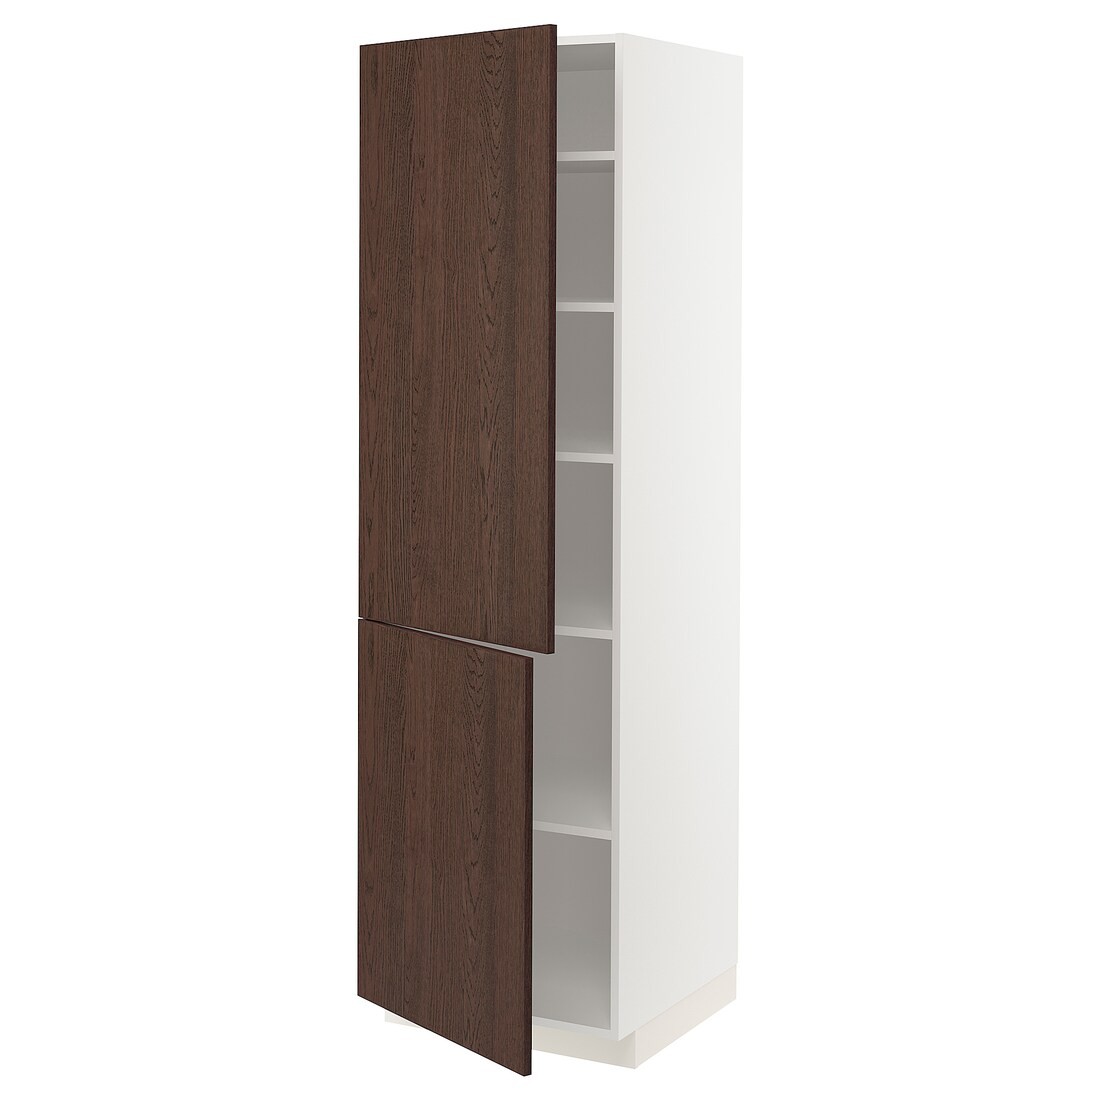 METOD МЕТОД Высокий шкаф с полками / 2 дверцы, белый / Sinarp коричневый, 60x60x200 см